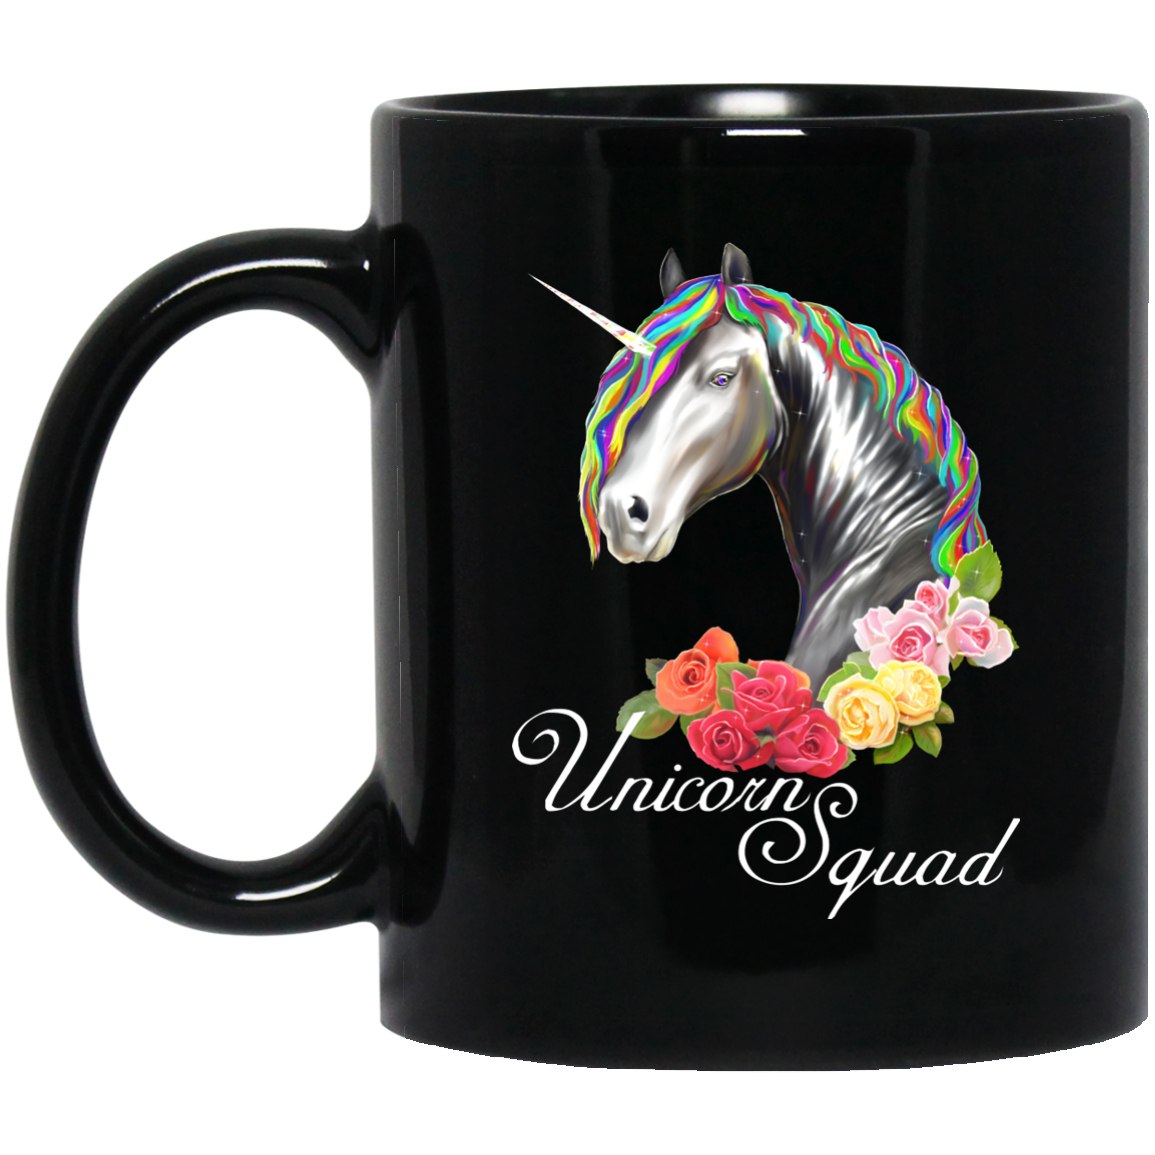 Unicorn Squad Black Coffee Mugs - GoneBold.gift